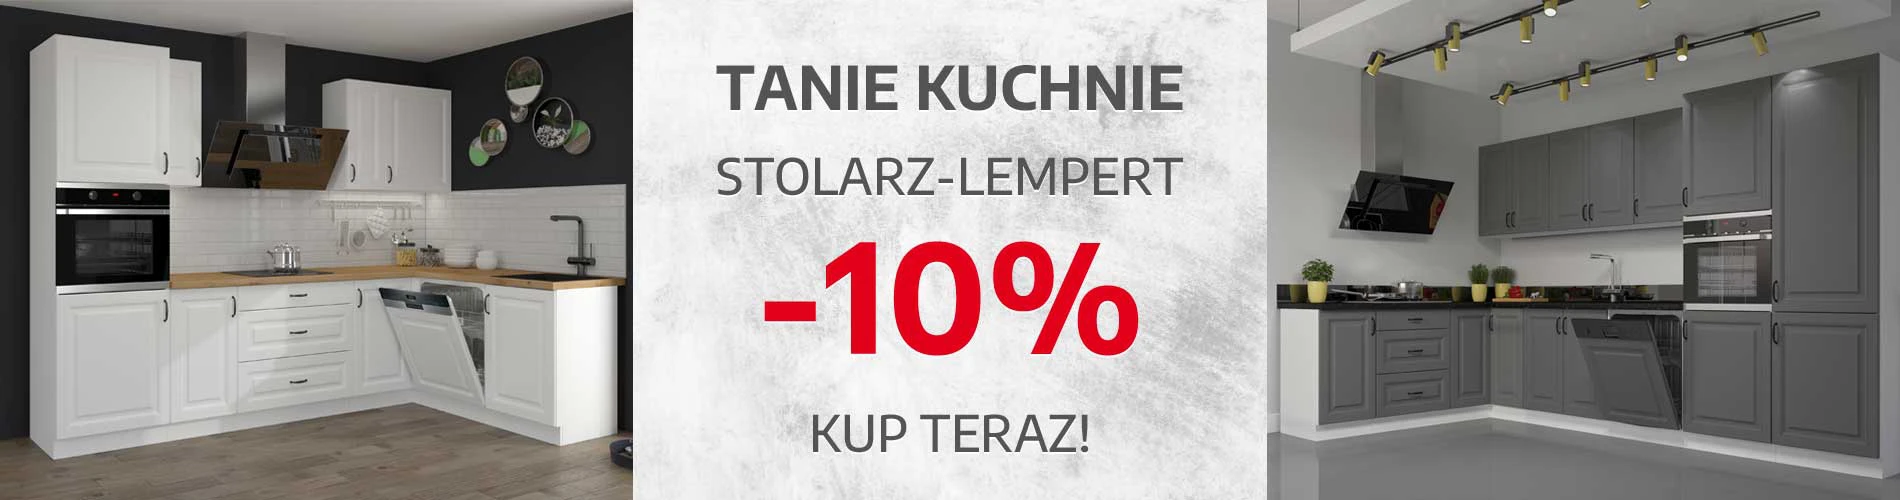 Stolarz - Lempert promocja -10%